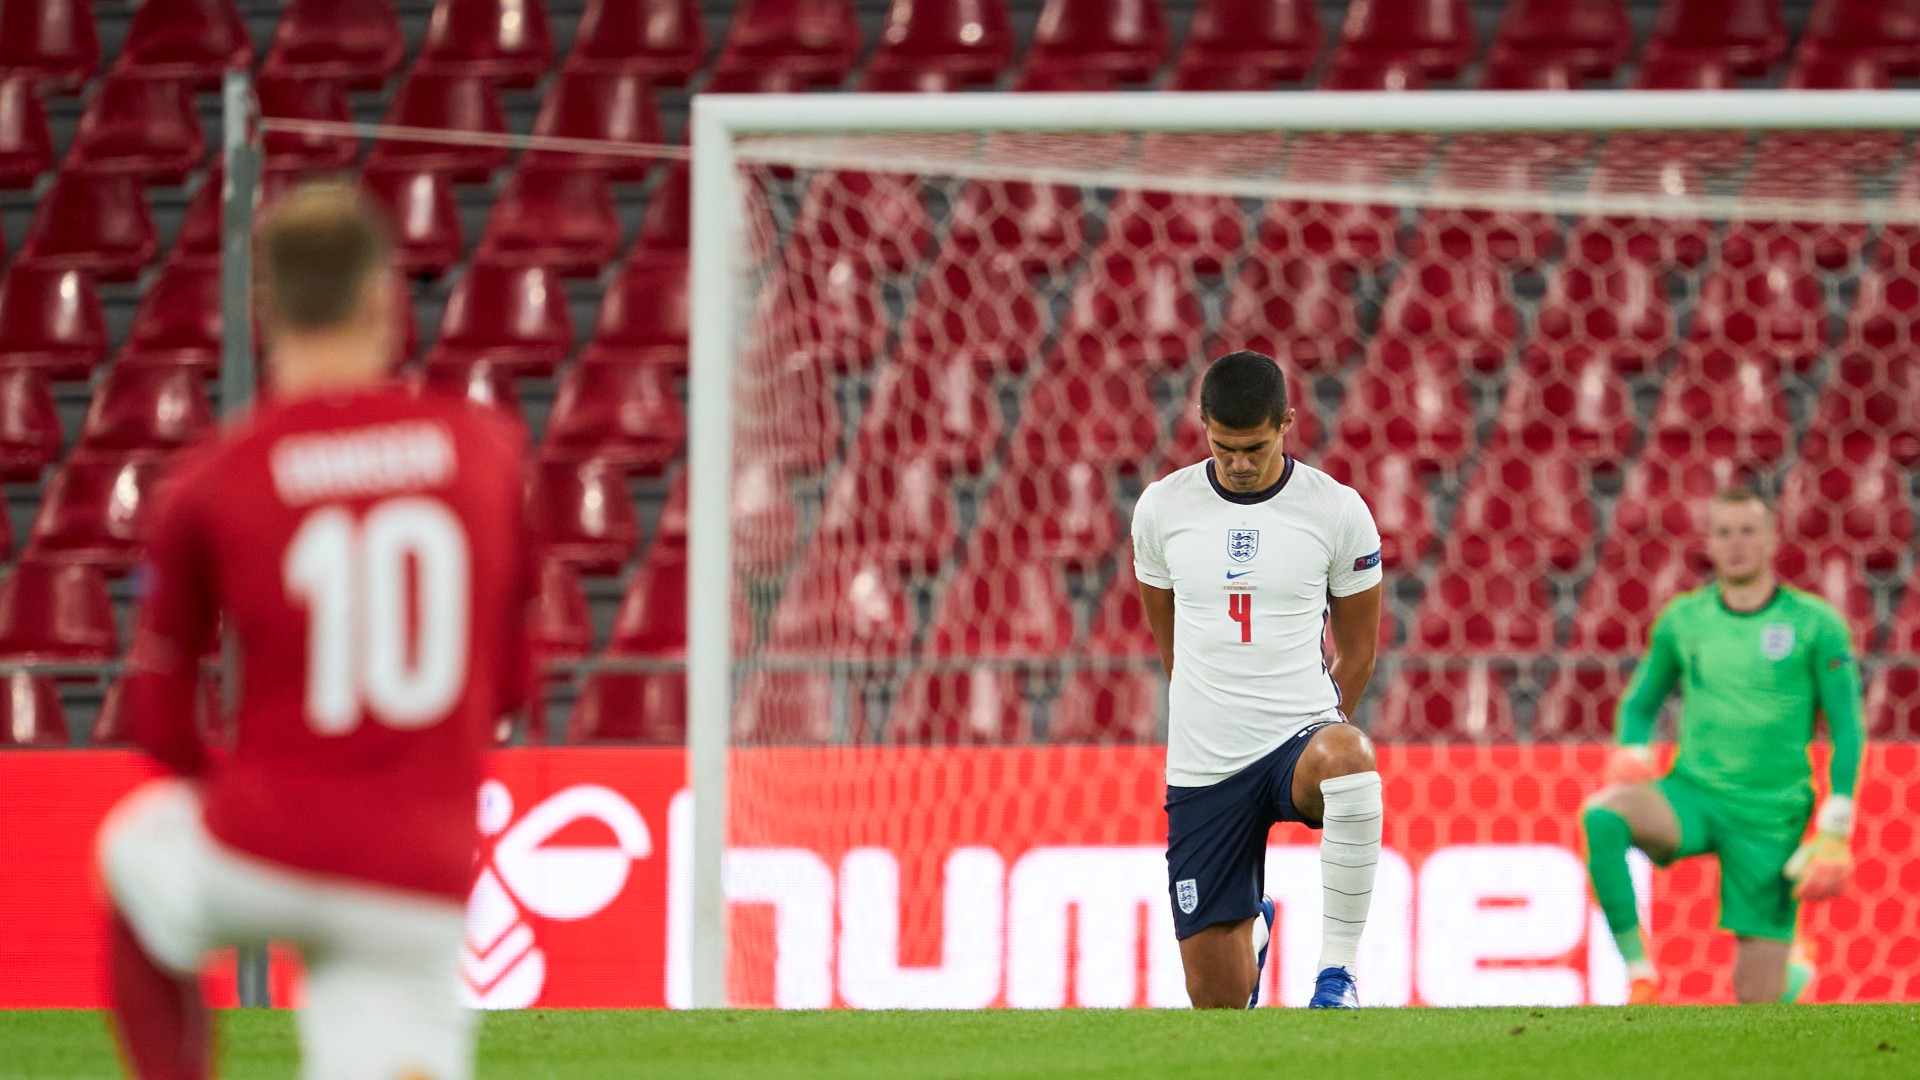 Inglaterra debatirá sobre arrodillarse previo a los duelos en la Copa Mundial